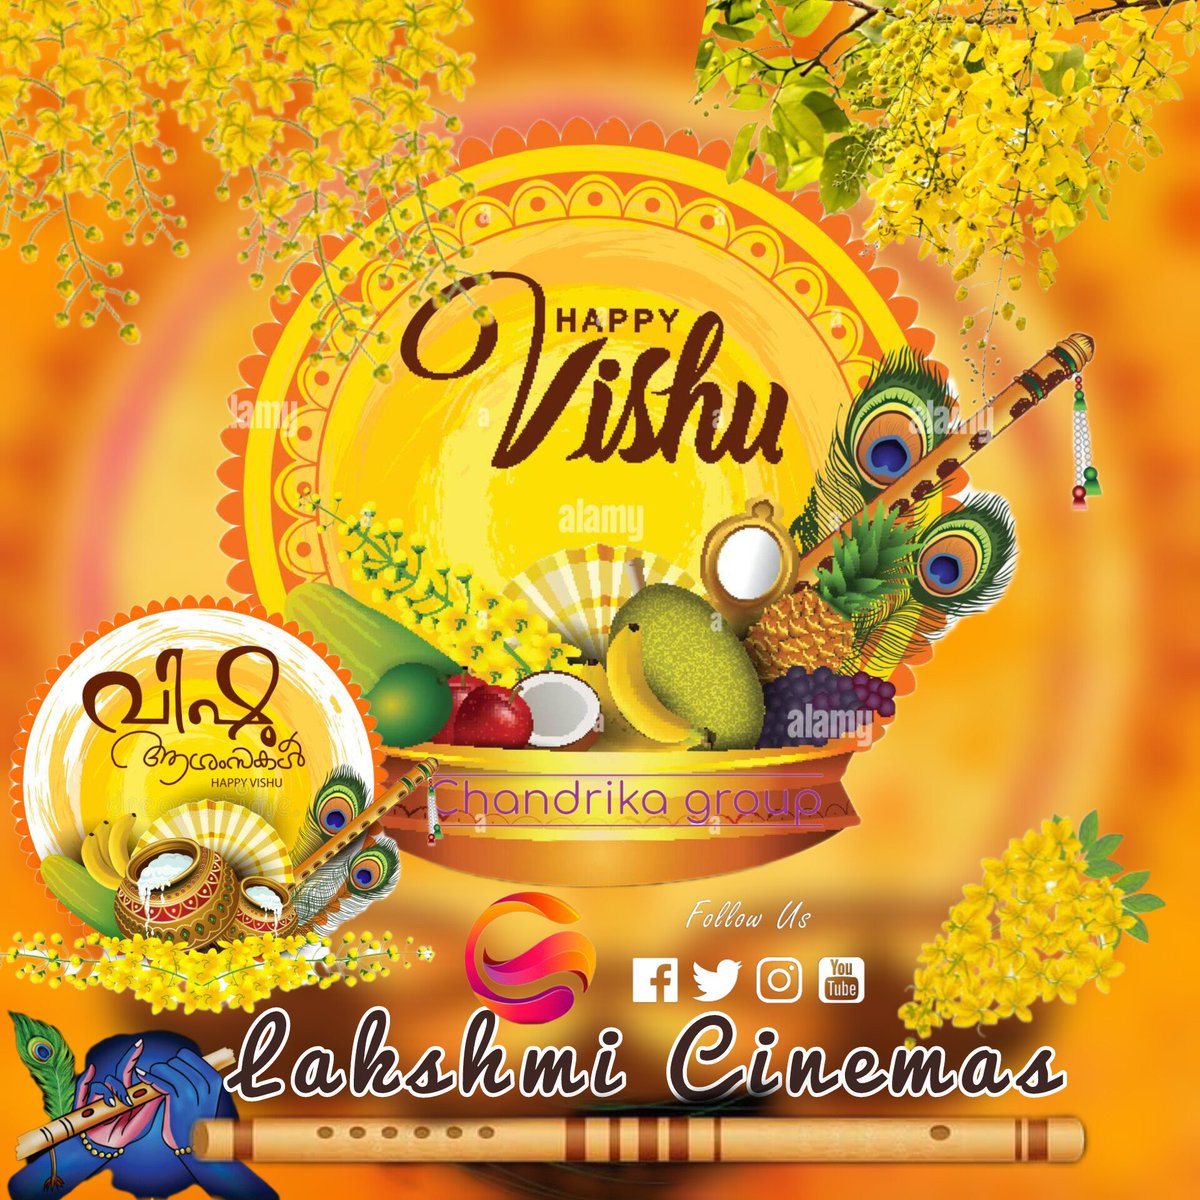 വിഷുദിന ആശംസകള്‍ #HappyVishu @LakshmiCinemass